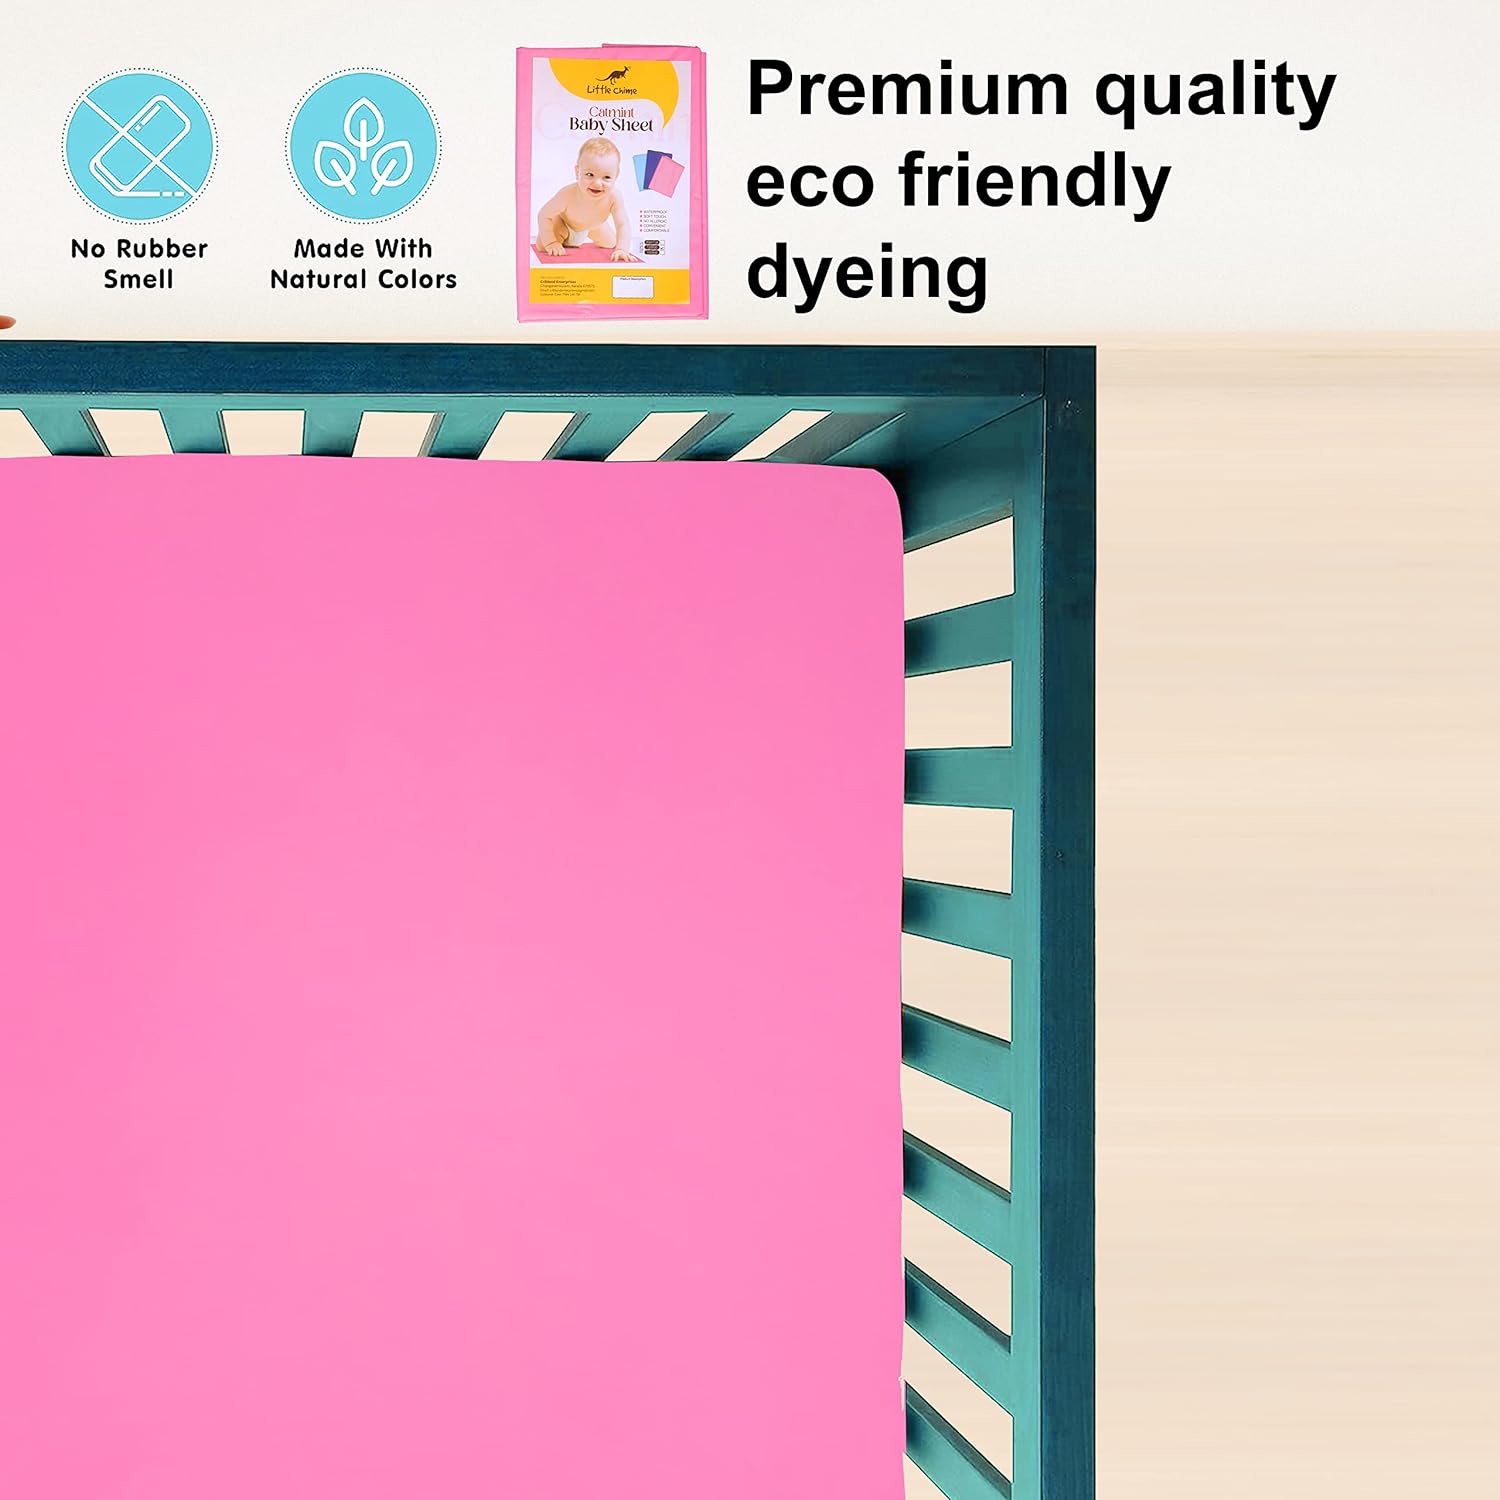 New Born Baby Sheet Washable Bed Sheet/Mattress Protection Sheet/Crib Sheet Small/Bed Protector (Pink)